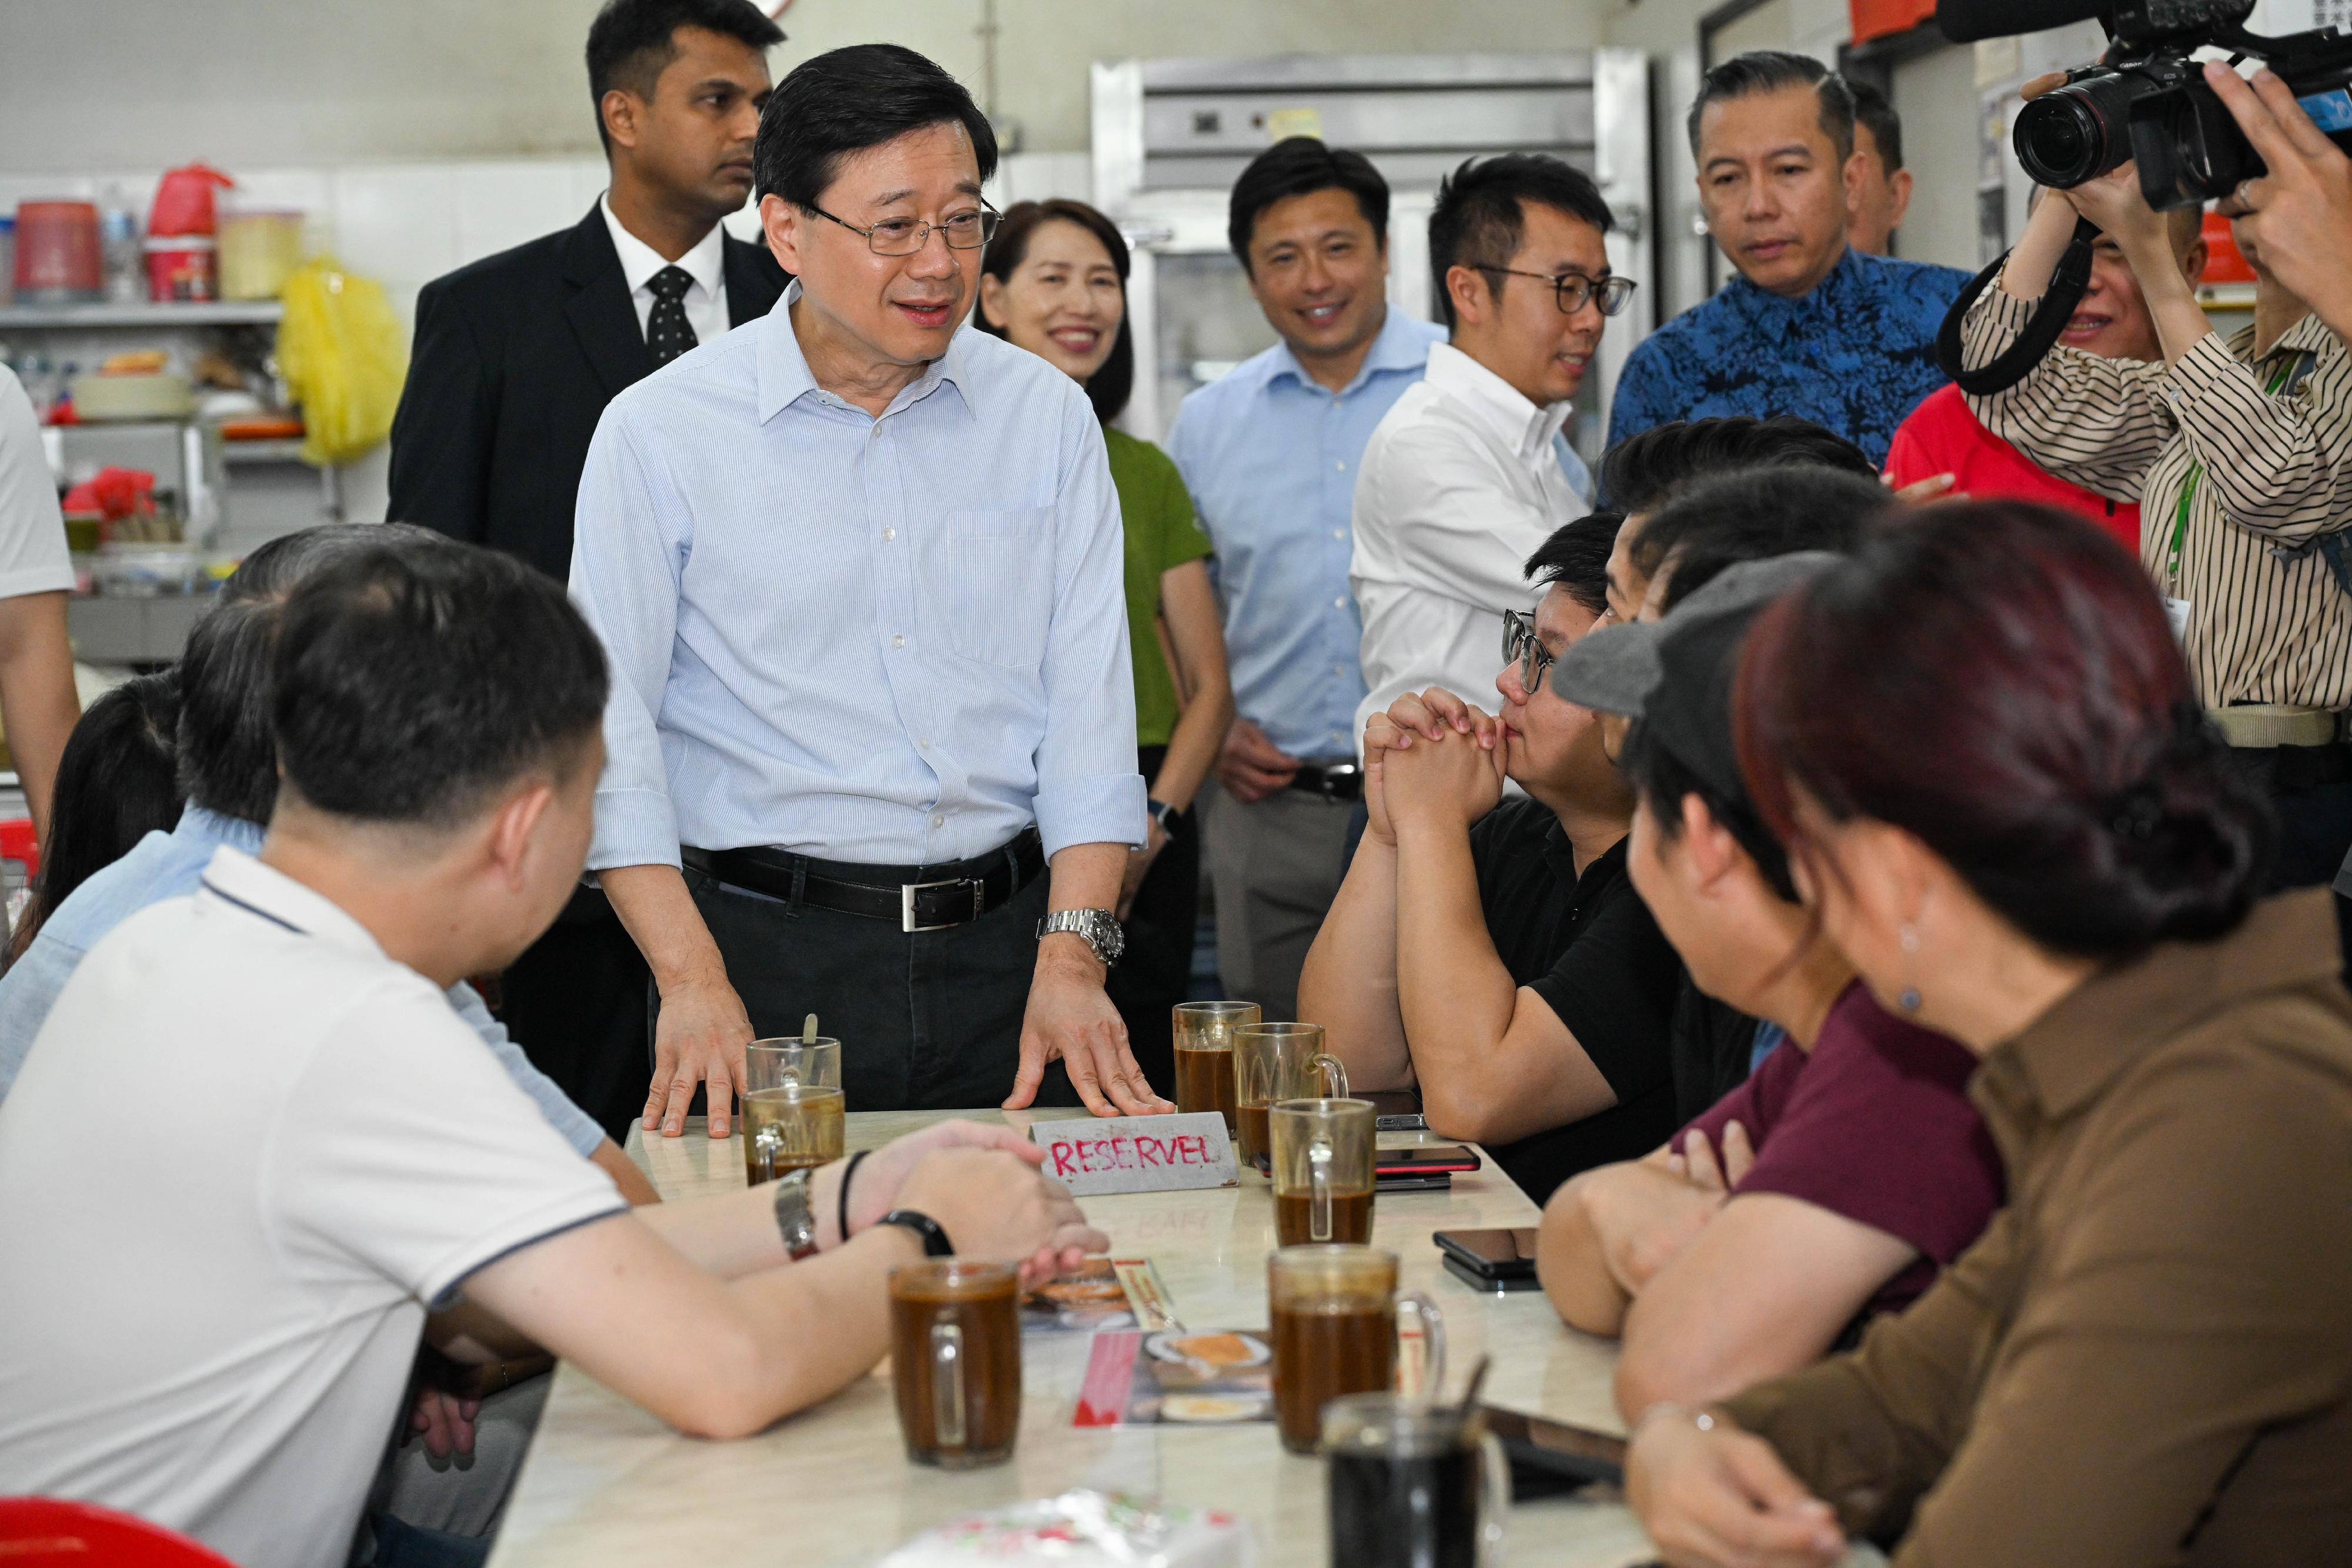 行政長官李家超今日（七月二十八日）在馬來西亞吉隆坡熟食中心享用地道早餐。圖示李家超與當地市民互動。